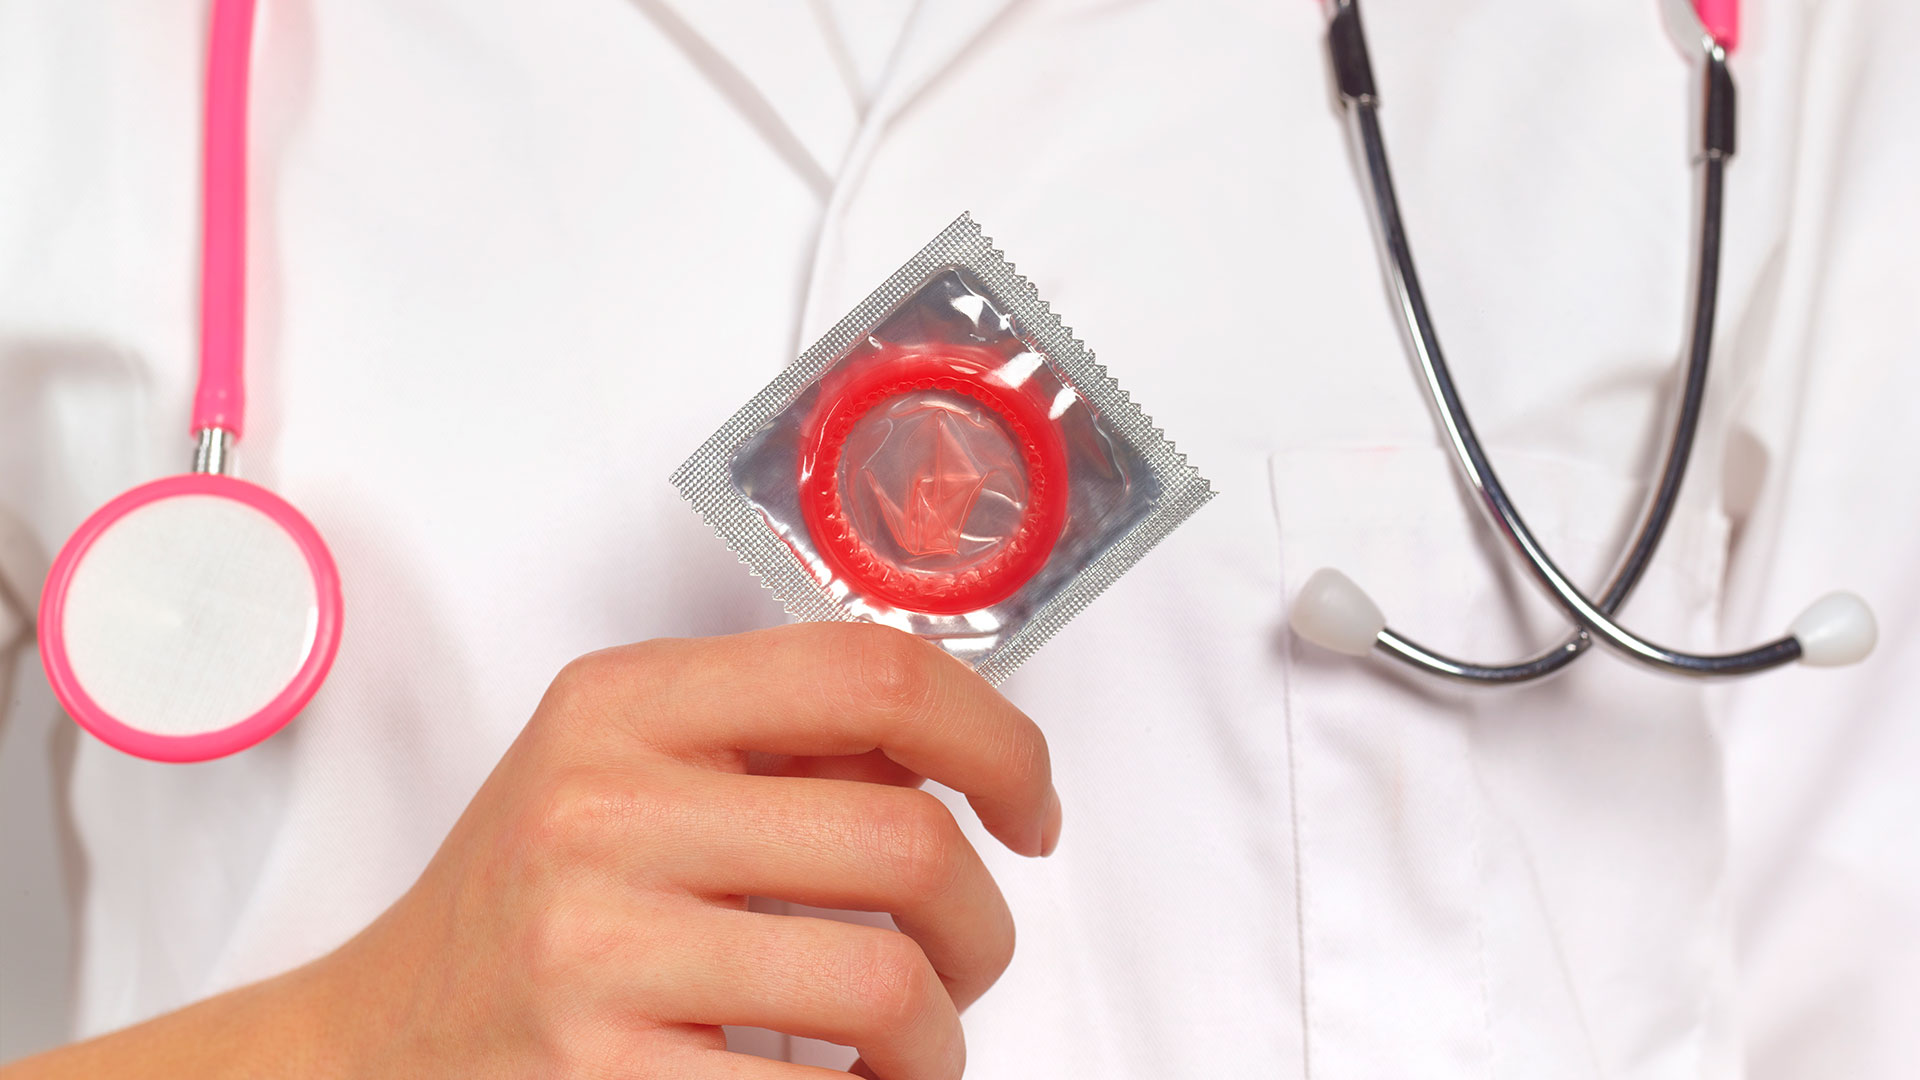 El preservativo previene, además del embarazo, enfermedades de transmisión sexual (Getty)